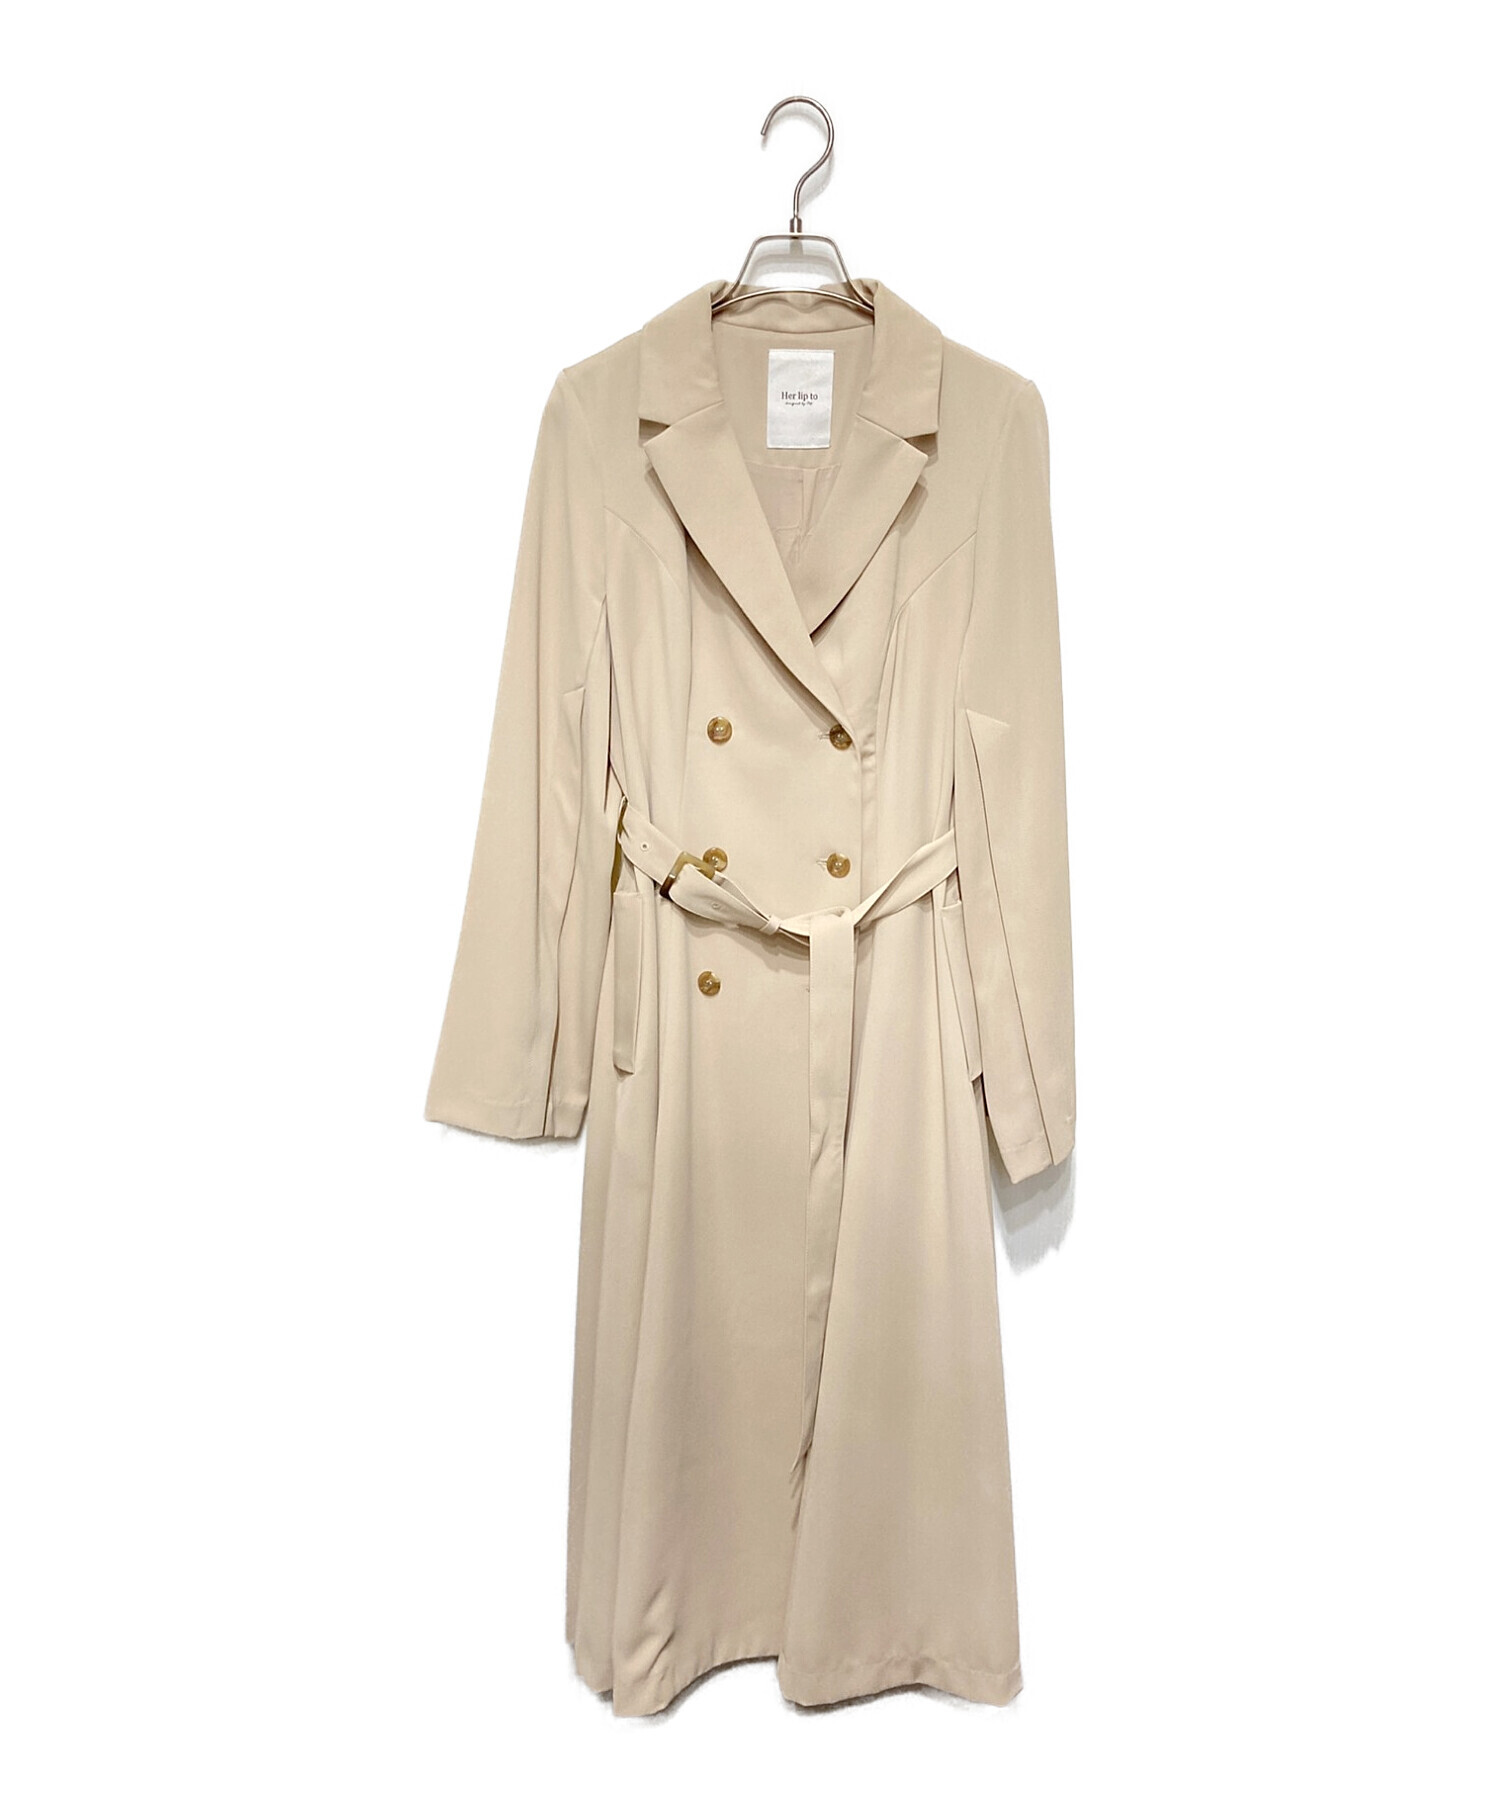 HER LIP TO (ハーリップトゥ) Classic Open Sleeve Dress Coat ベージュ サイズ:S